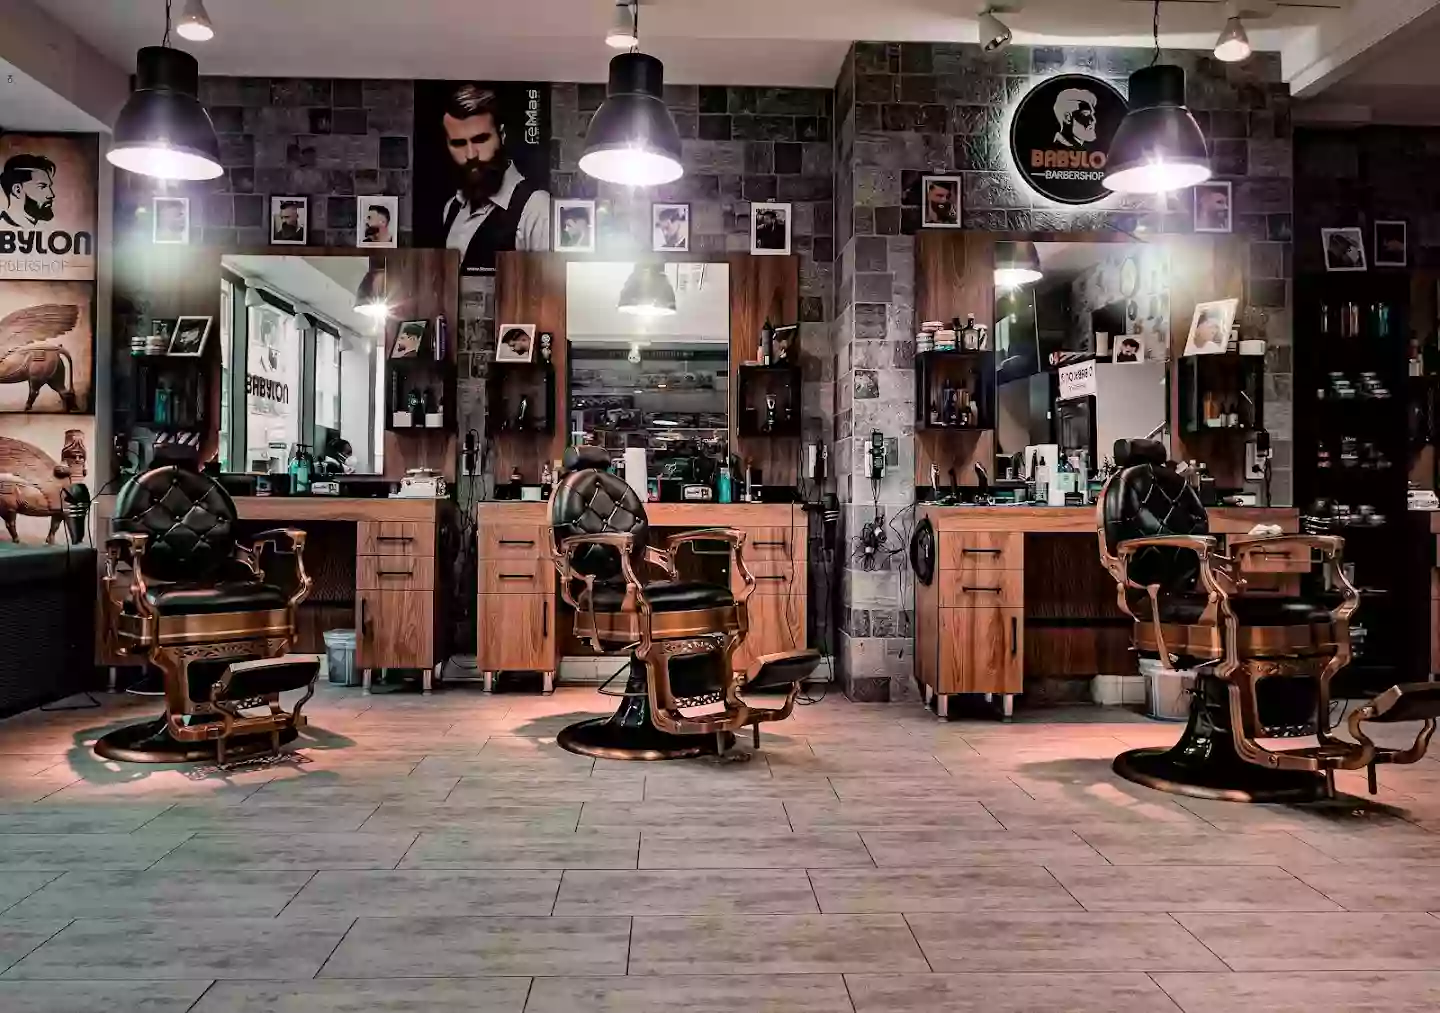 Babylon Barbershop Würzburg (Friseur & Barbier)